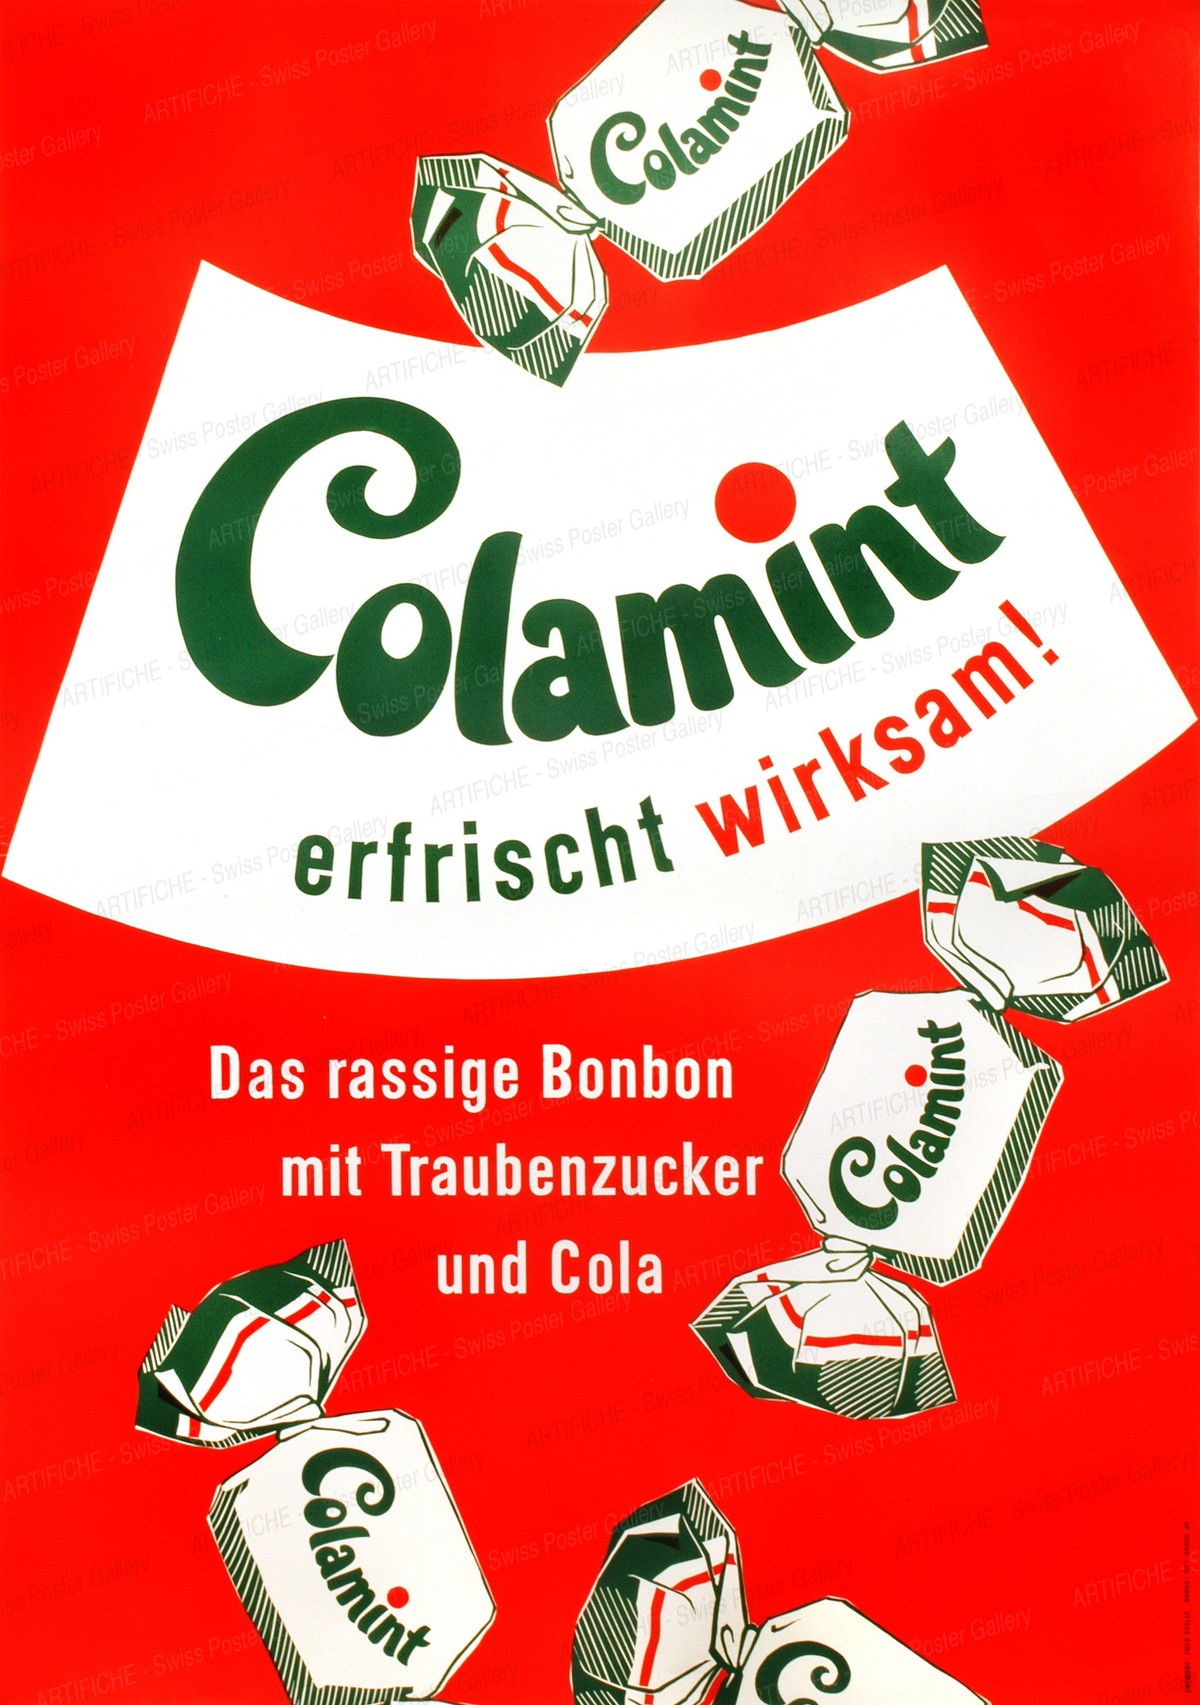 Colamint erfrischt wirksam – Das rassige Bonbon mit Traubenzucker und Cola, Fred Stolle